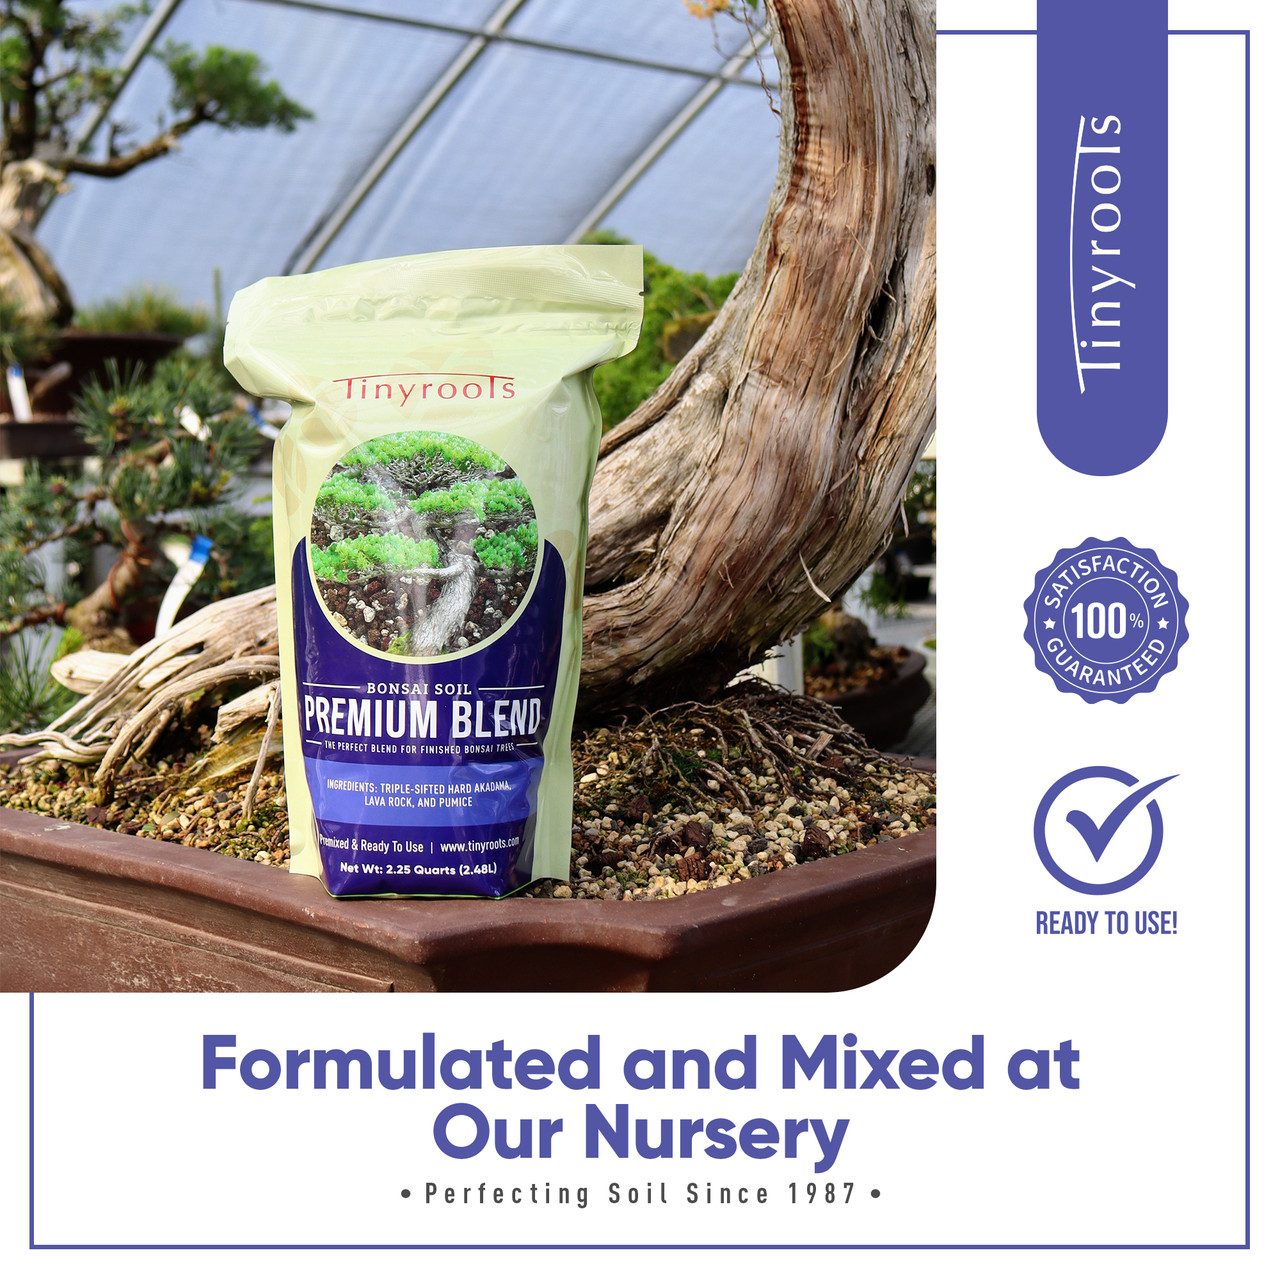 Tinyroots Bonsai Tree Soil: Premium Blend